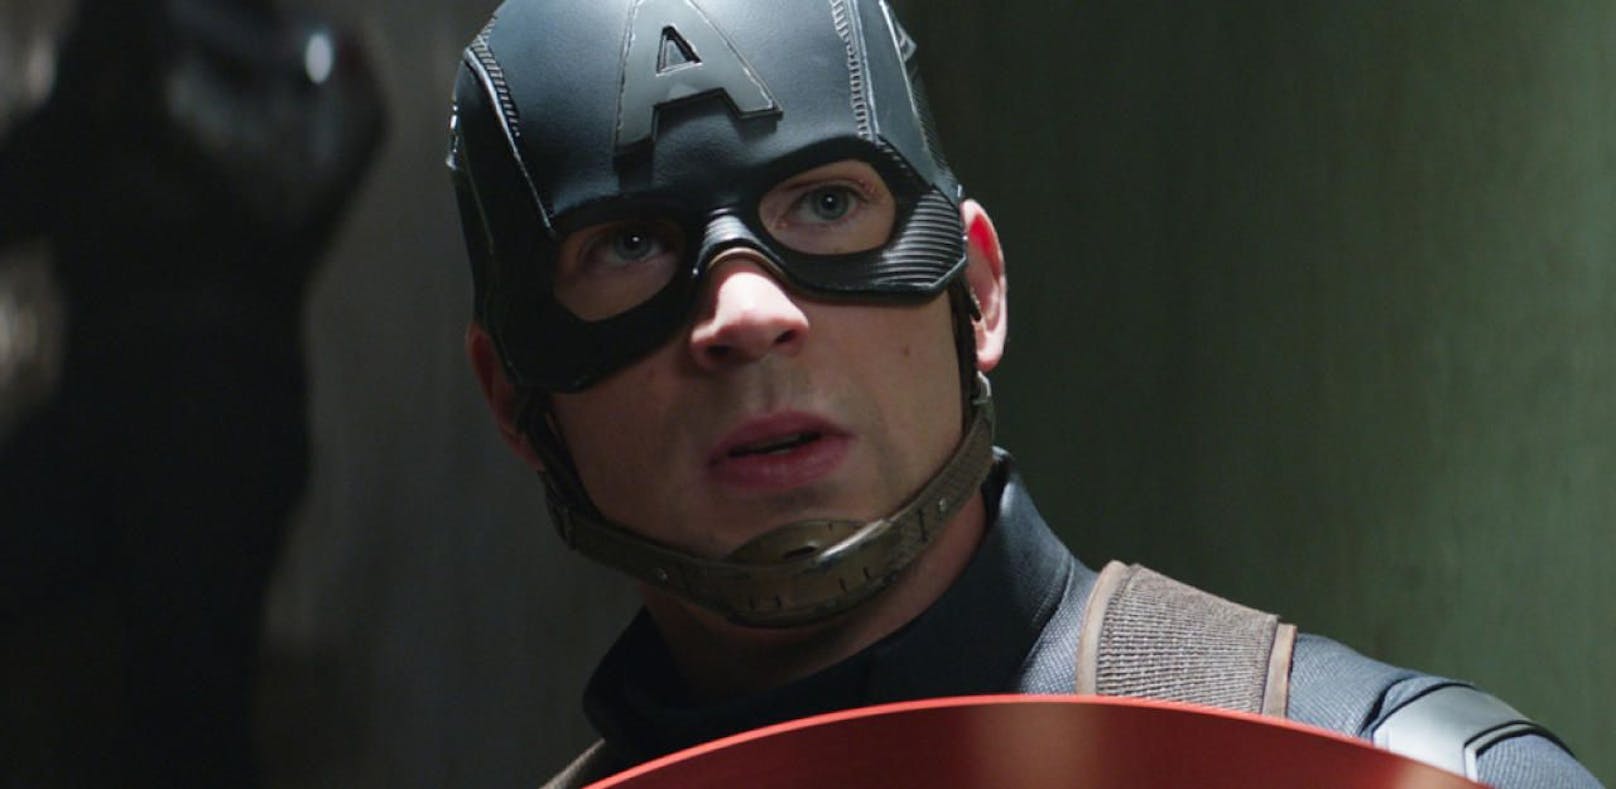 Ist "Captain America" bald Geschichte?